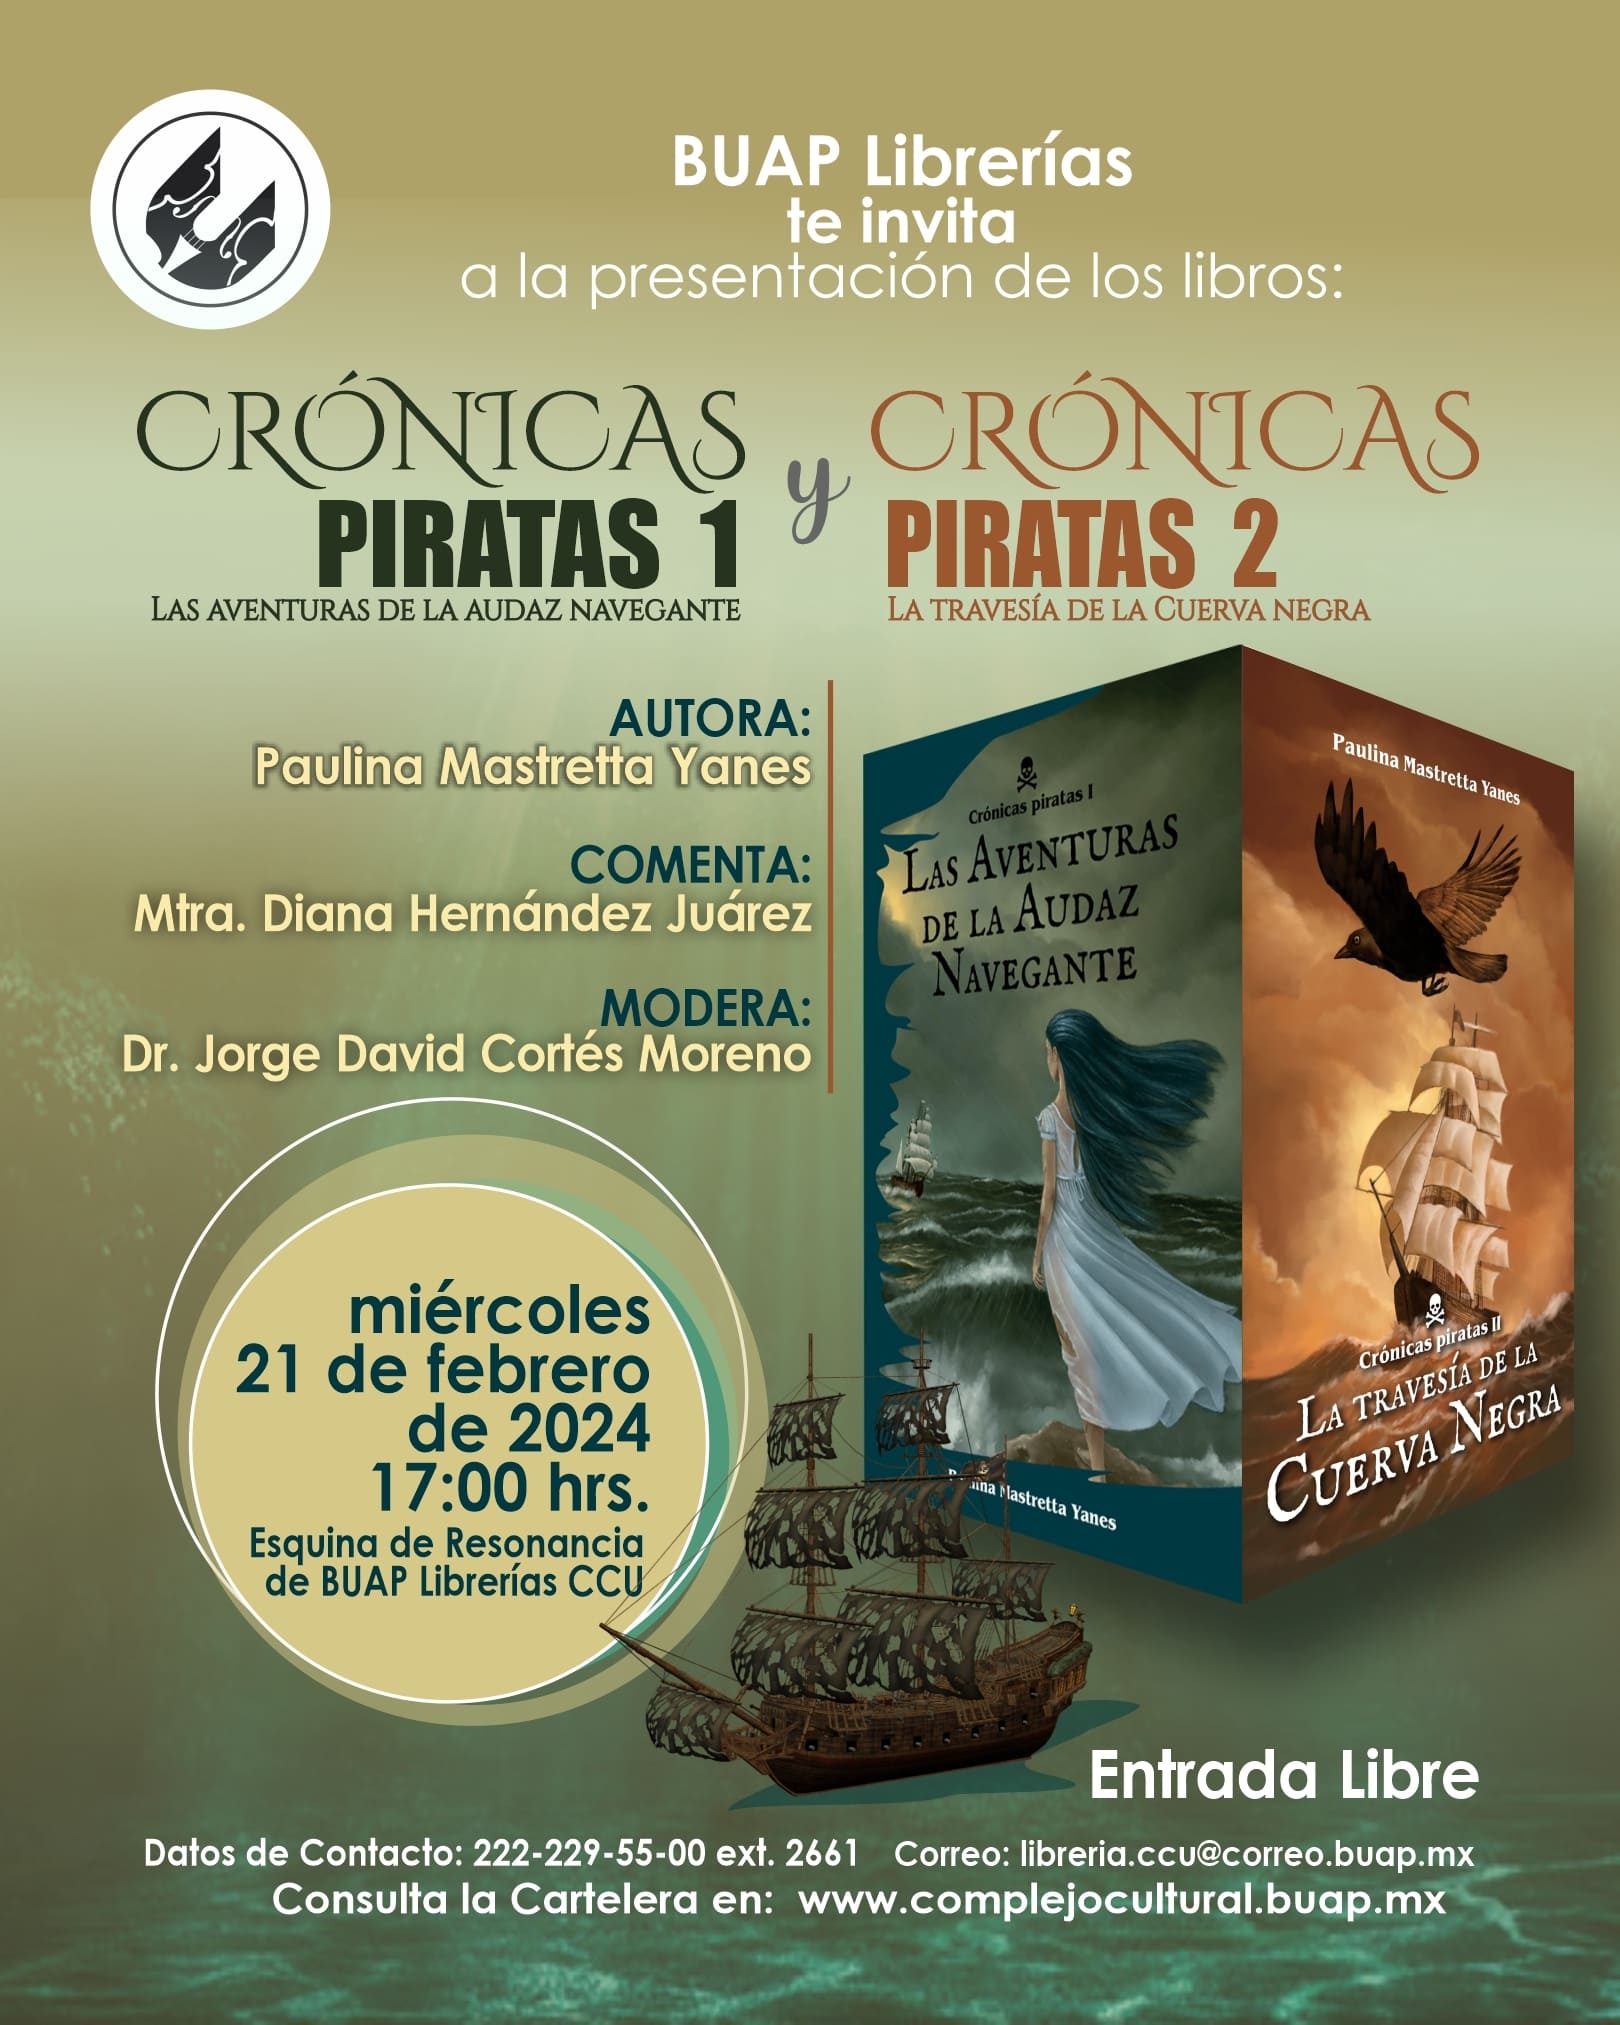 BUAP LIBRERÍAS INVITA:  Presentación de los libros Crónicas piratas I y II  